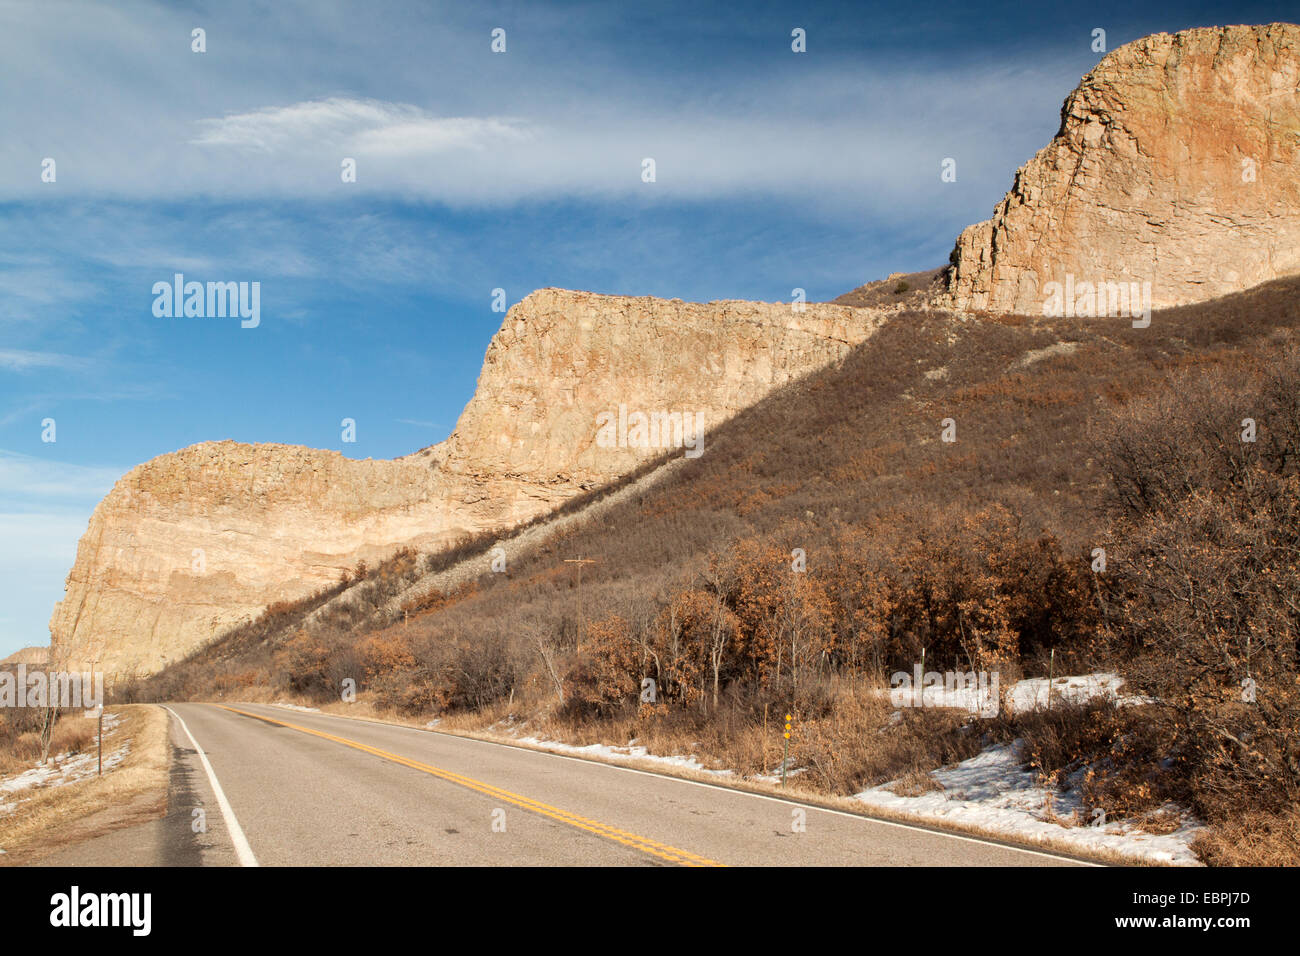 L'imposante falaise de la radiale volcanique appelé Devil's dyke Stairsteps s'élève au-dessus de l'autoroute 12 dans la région de Colorado Colorado Banque D'Images